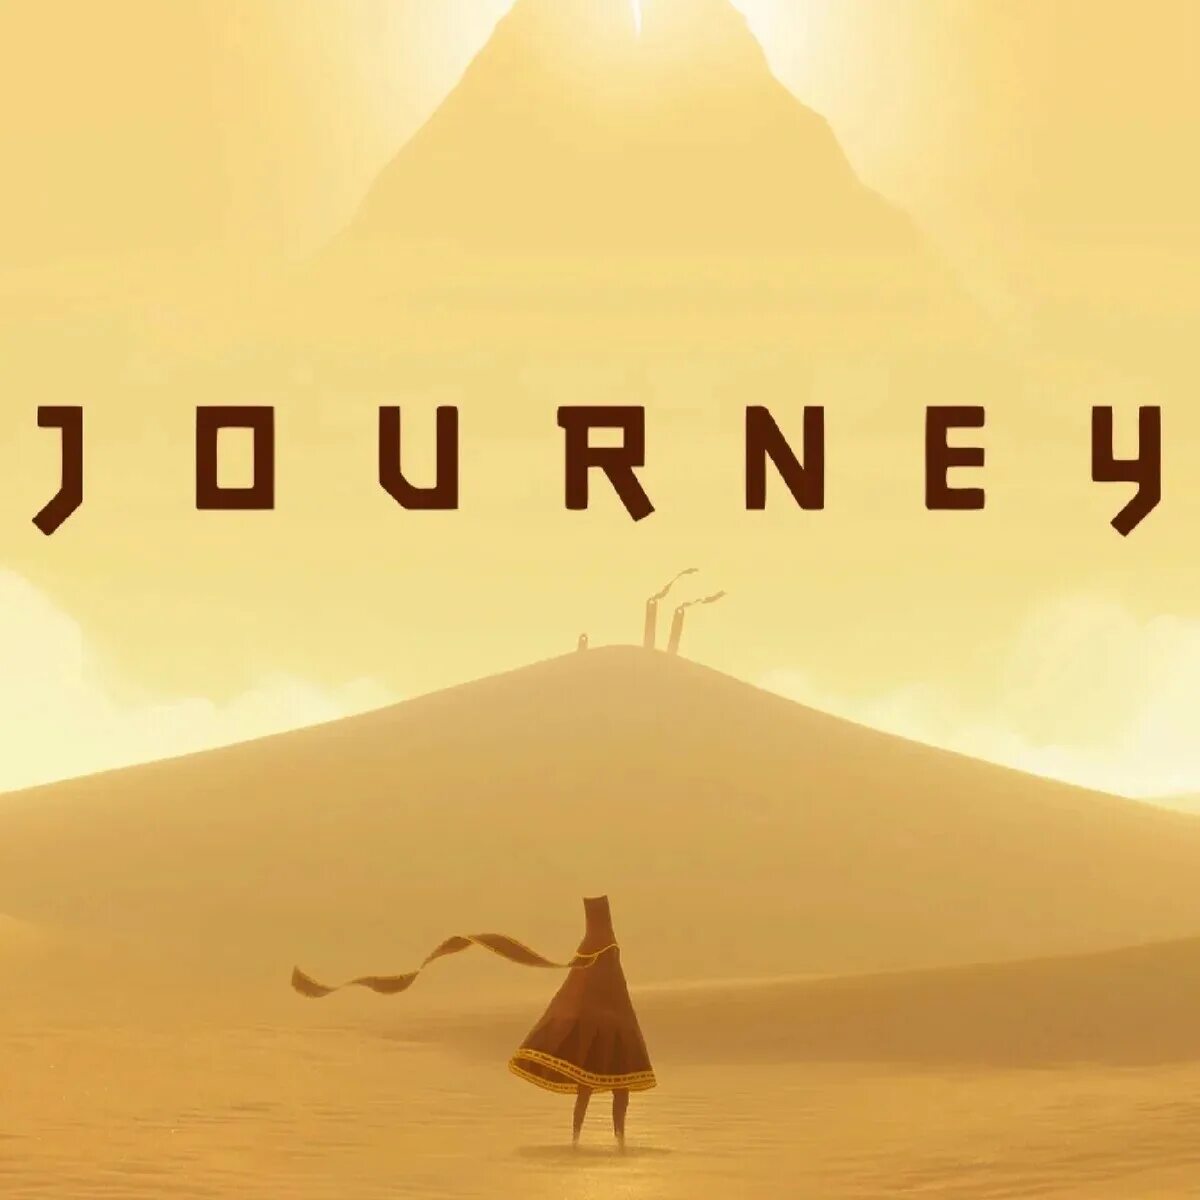 Journey name. Journey игра. Journey (игра, 2012). Journey обложка. Journey / путешествие [ps3].